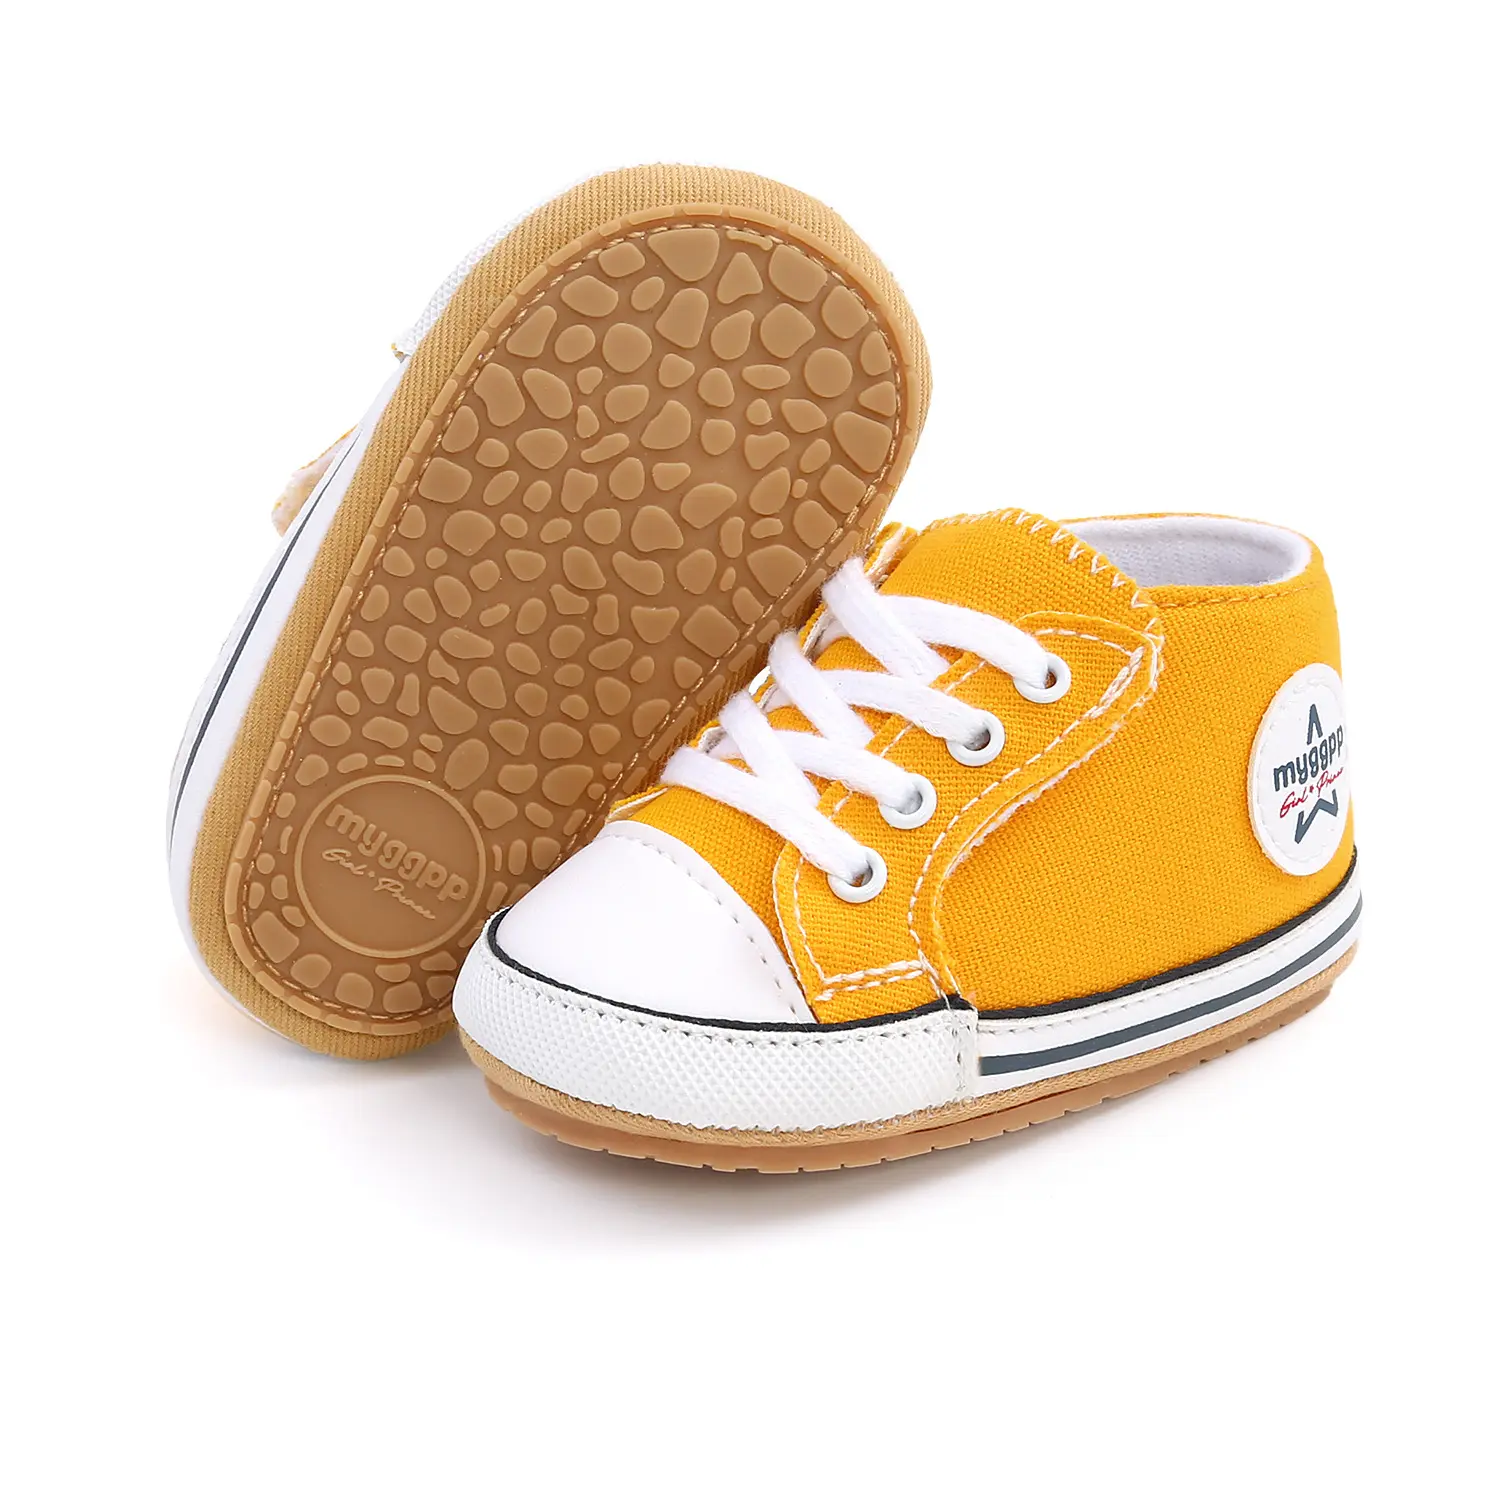 Chaussures à semelle souple en toile Velcro pour bébé, vente en gros, chaussures pour nouveau-né, accessoires et premiers pas,